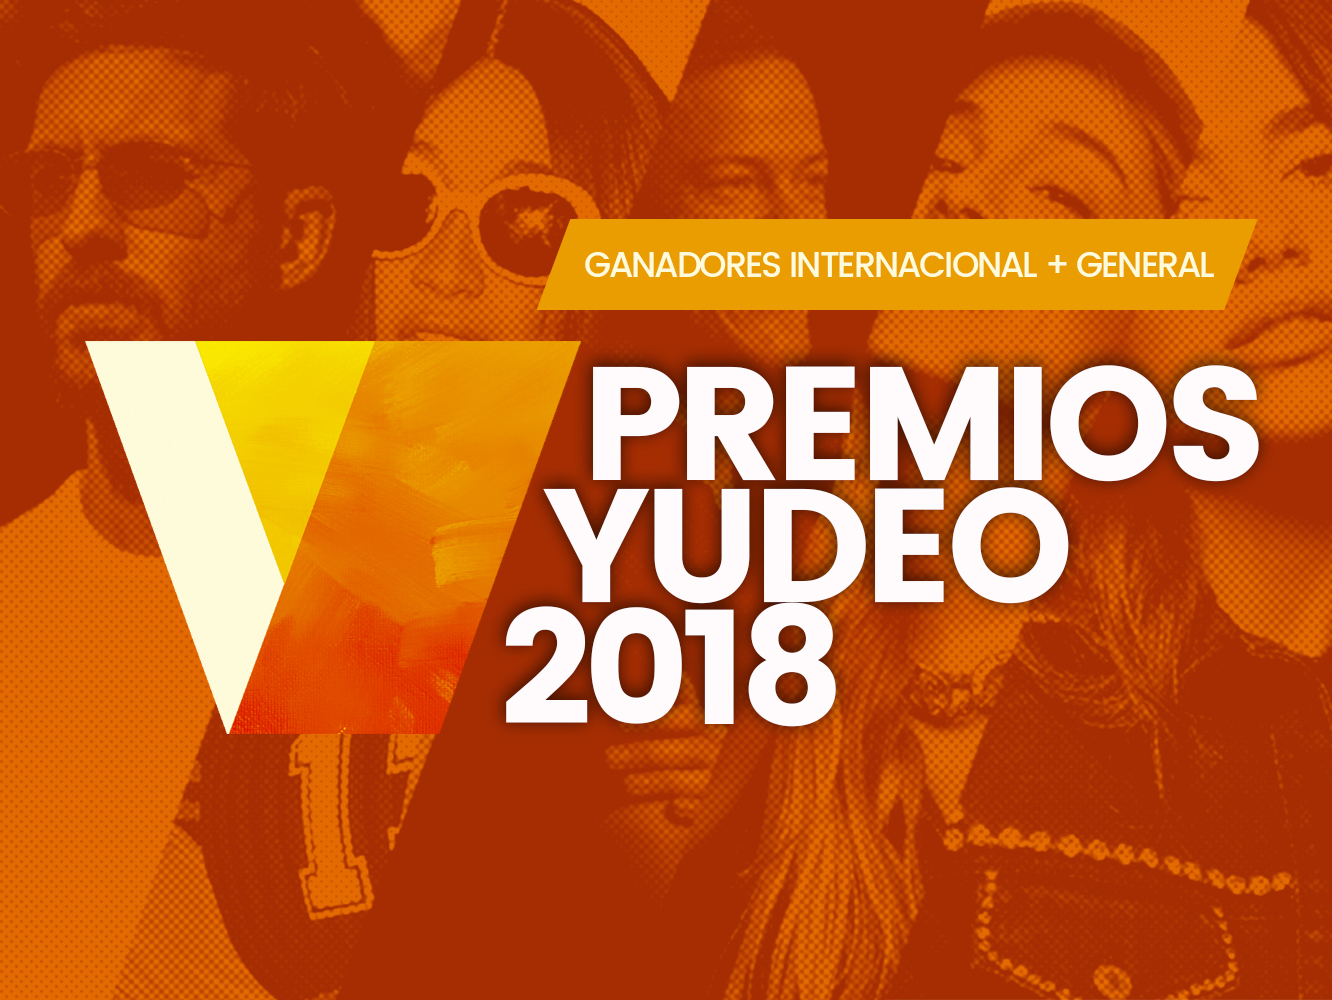 Premios Yudeo 2018 | Dua Lipa (5) se corona como gran ganadora de las categorías Internacional y General